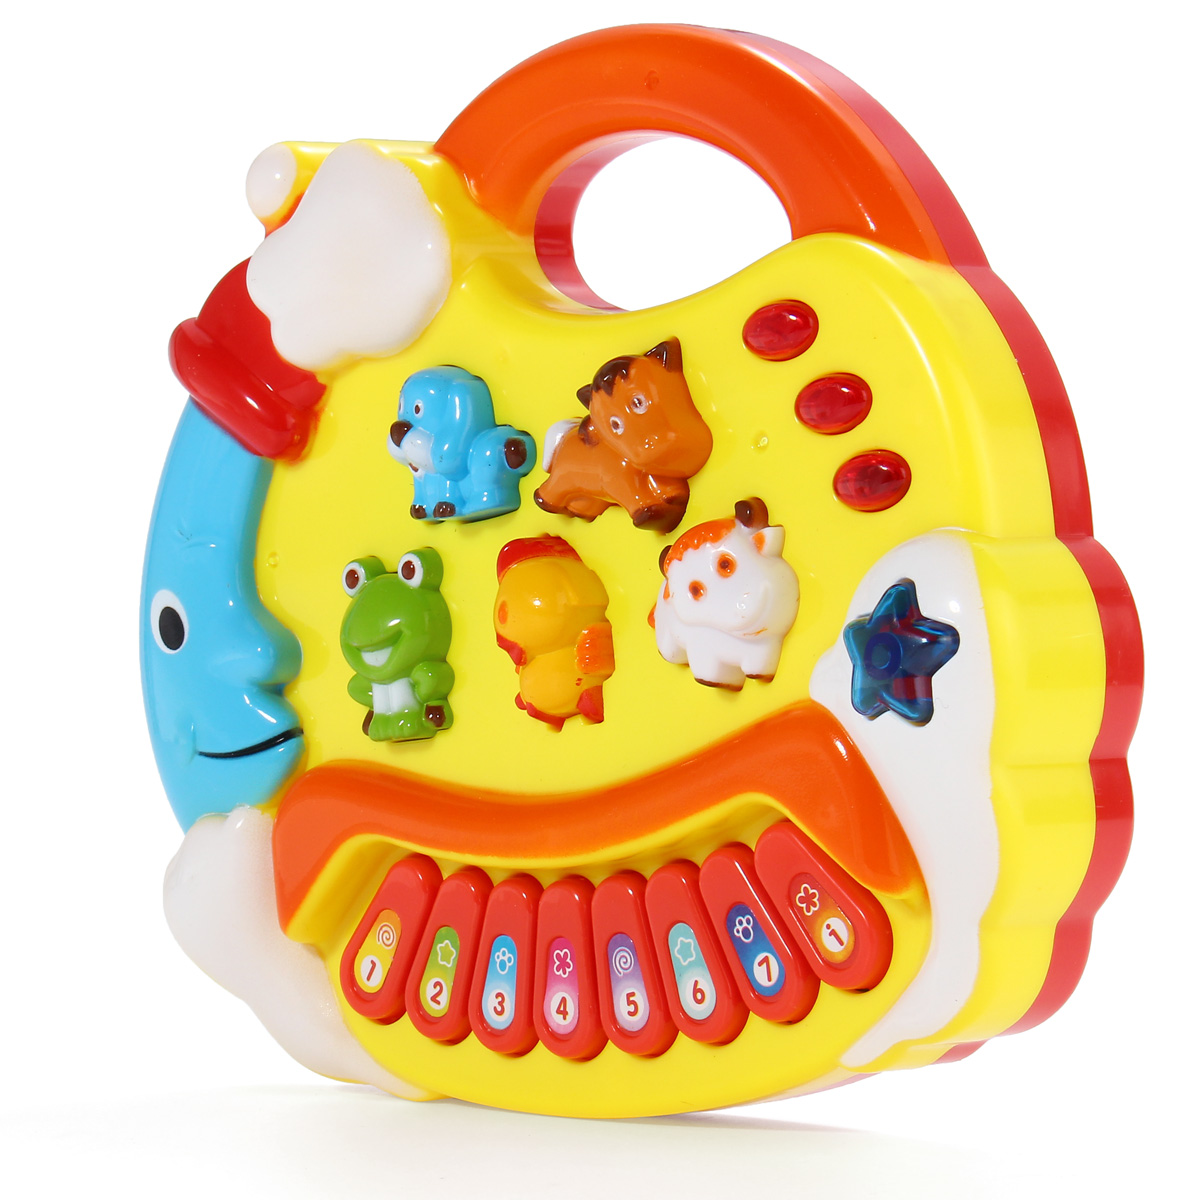 

Baby Kids Animal Farm Музыкальные игрушки Развивающие пианино Мини Звучащая игрушка Развивающие для детей